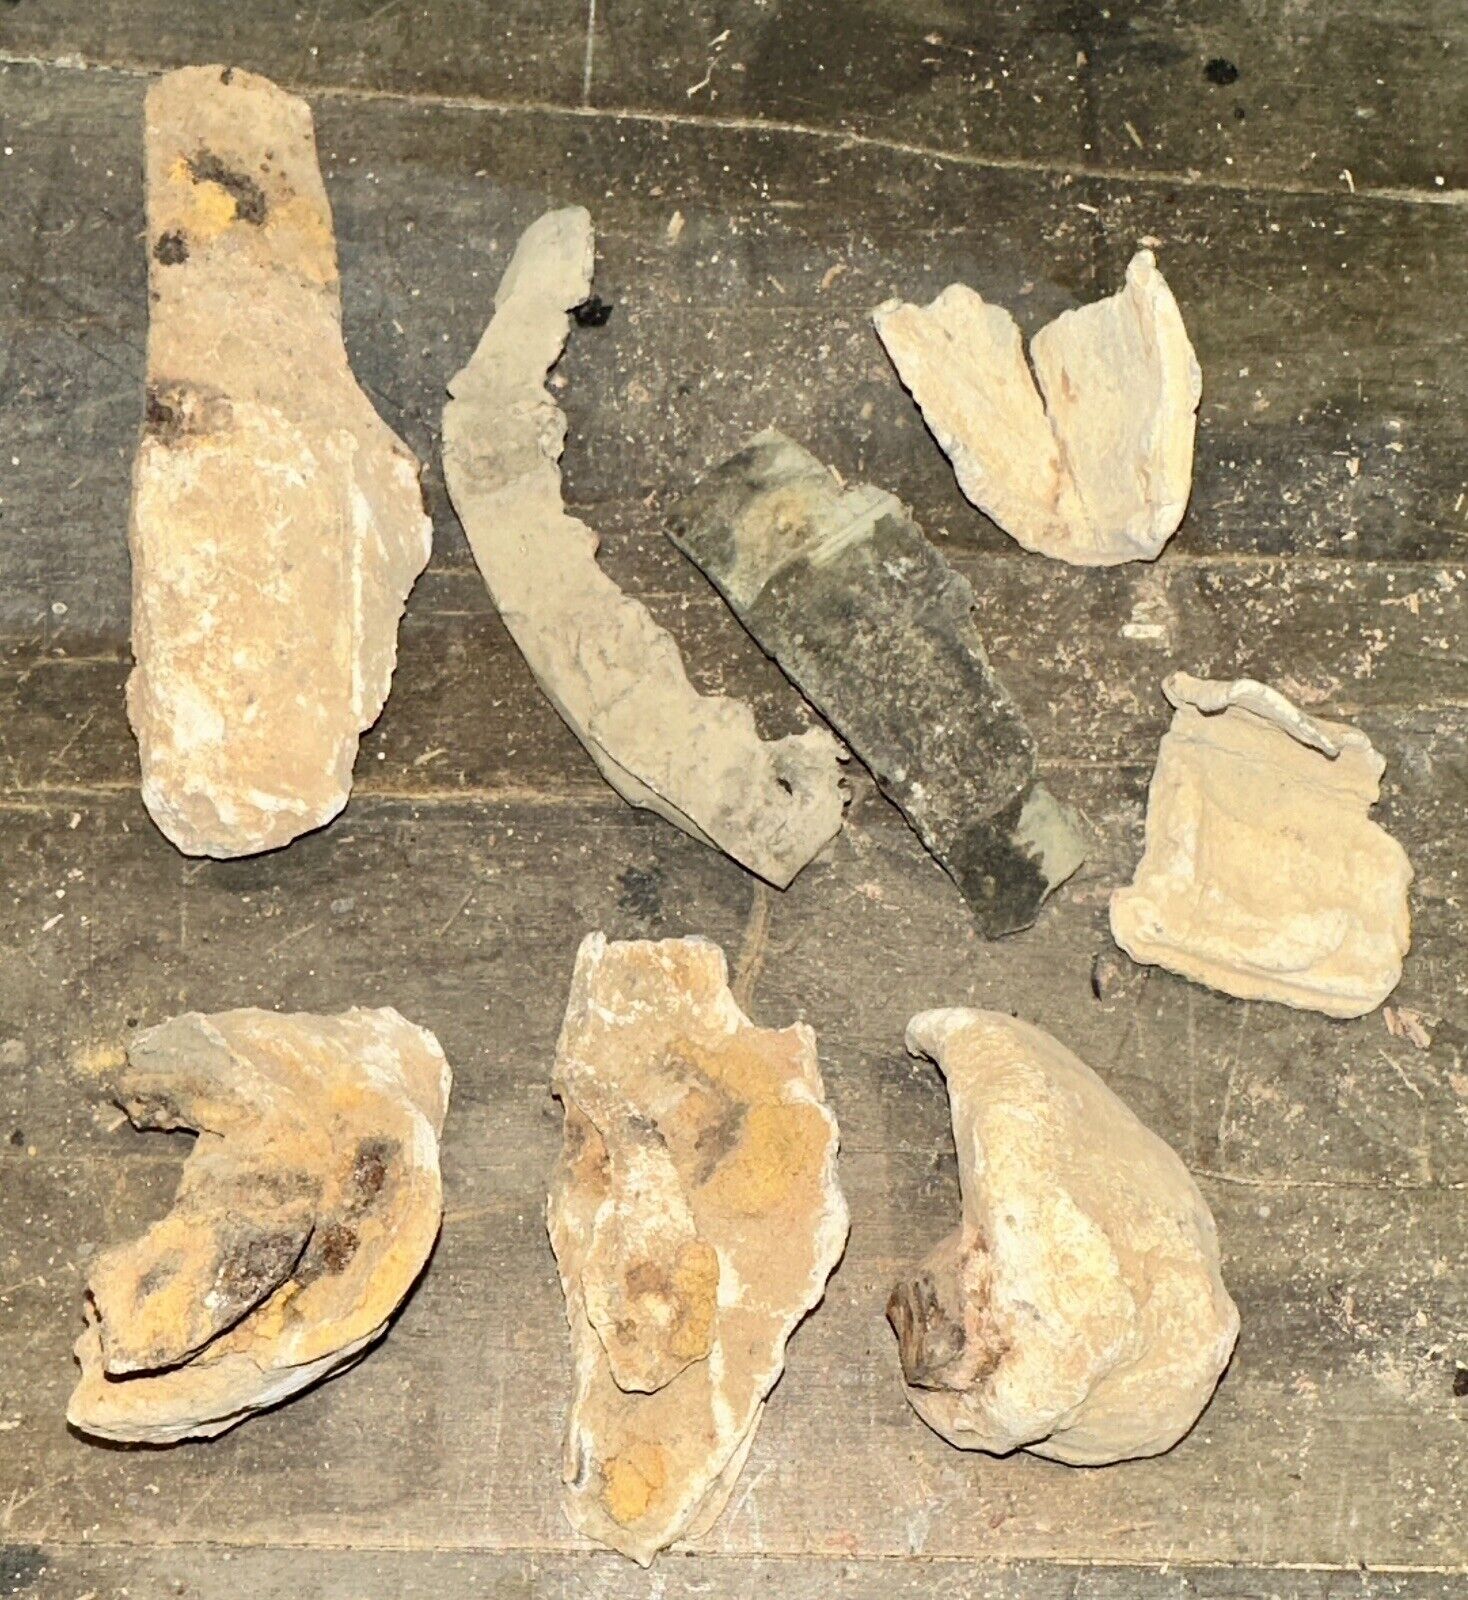 Sabot pieces from 4 different Civil War artillery shells